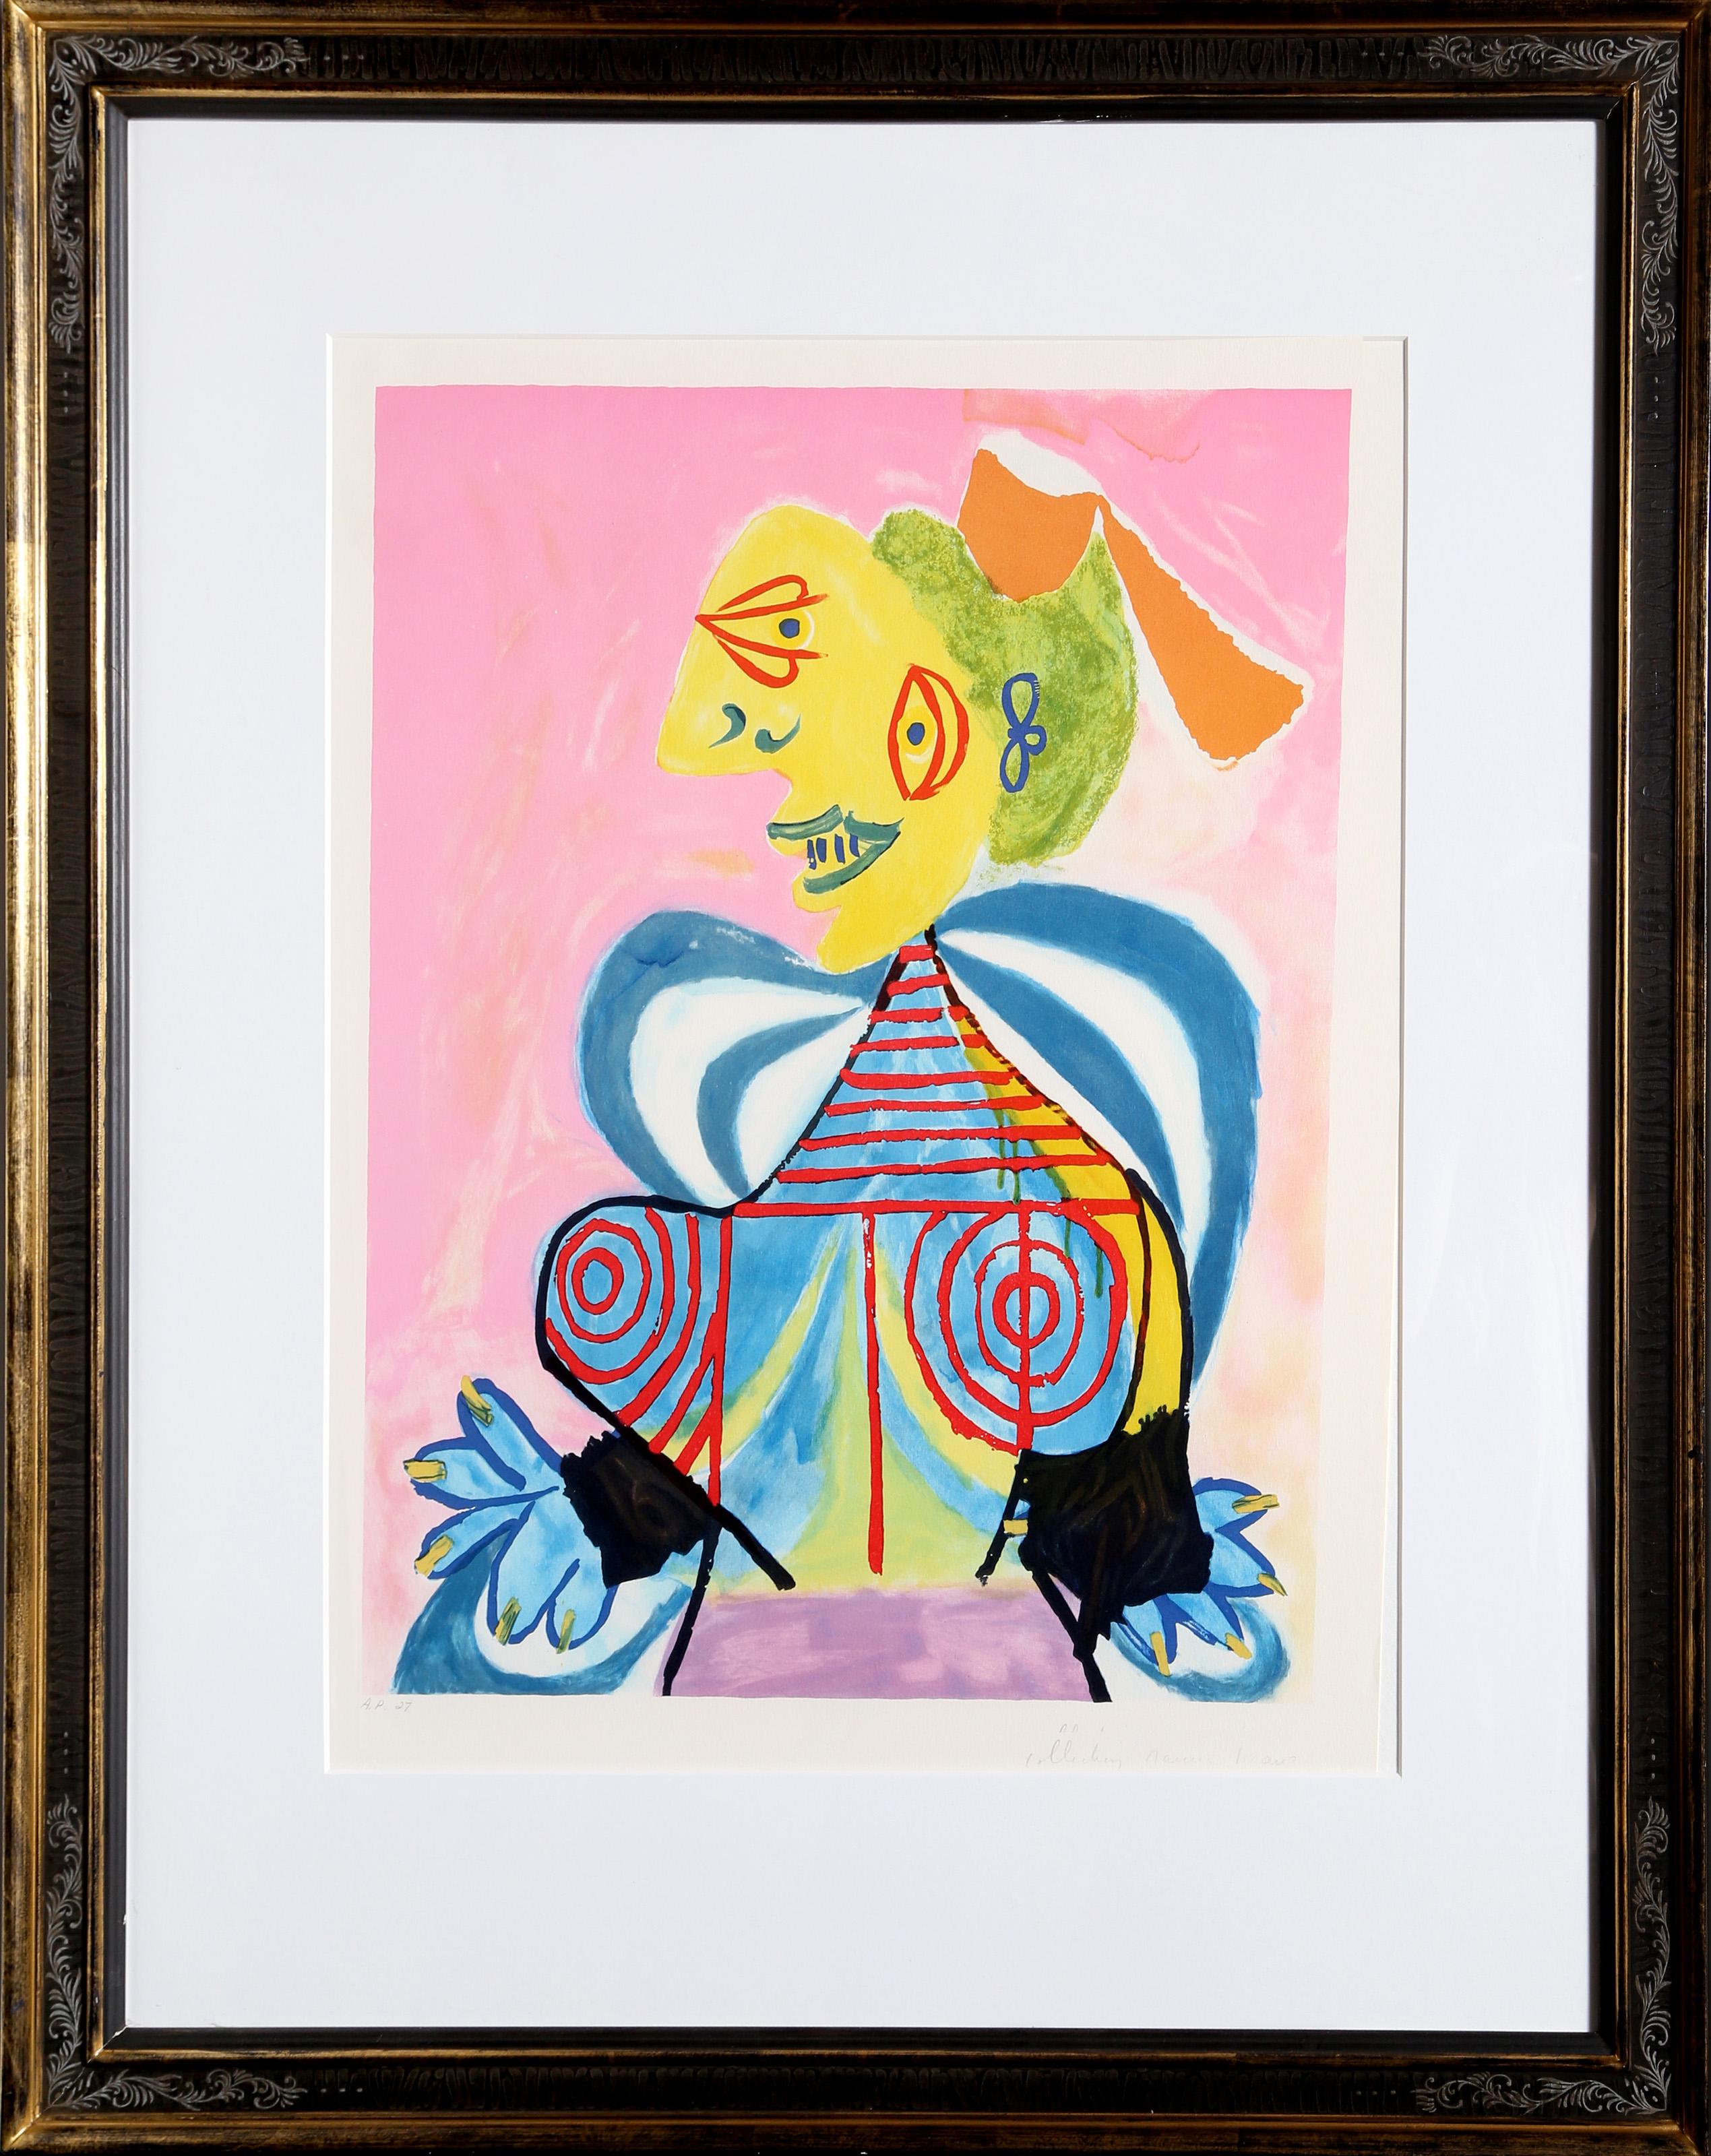 La représentation d'une femme d'Alès par Pablo Picasso est vive et colorée, rendue dans des tons vifs de rose, de jaune et de bleu. Représentée dans un style cubiste avec son visage et son corps fragmentés, la femme est composée de plusieurs formes